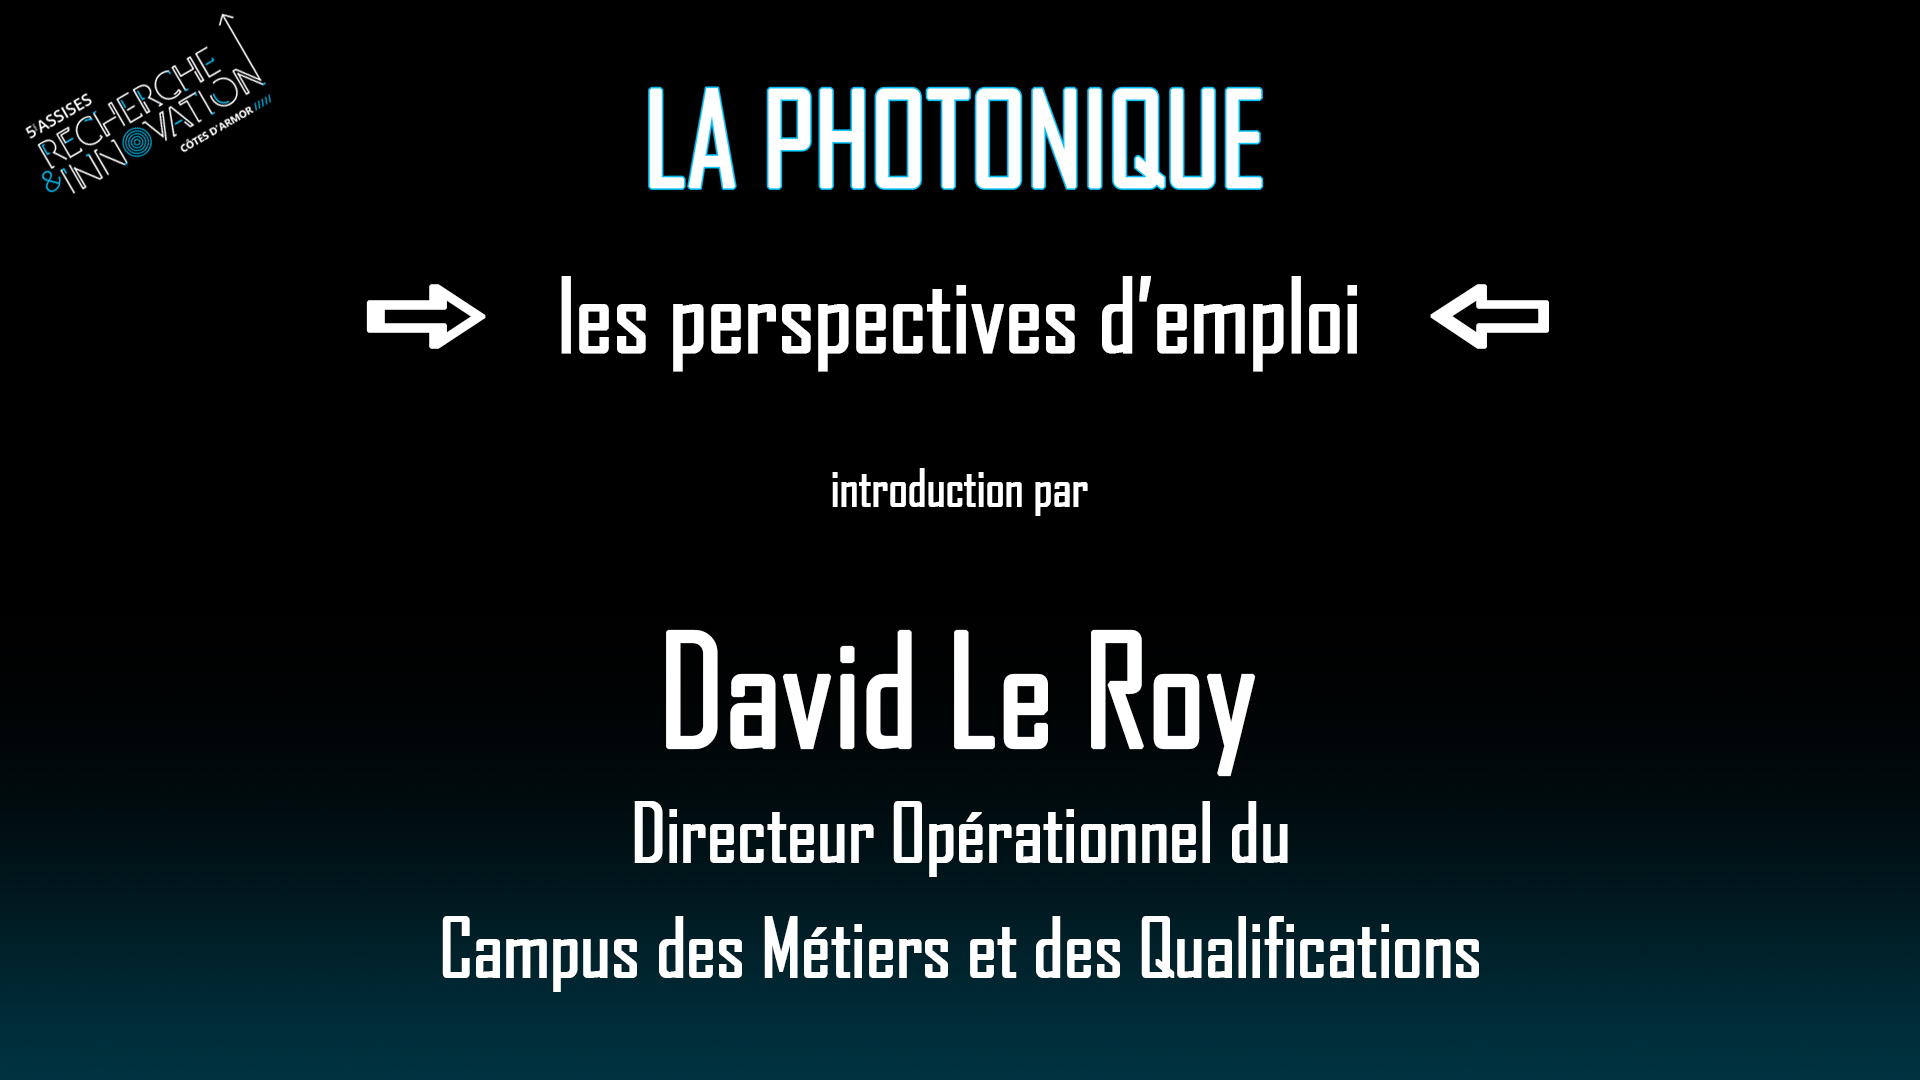 Introduction par David Le Roy, directeur opérationnel du Campus des Métiers et des Qualifications